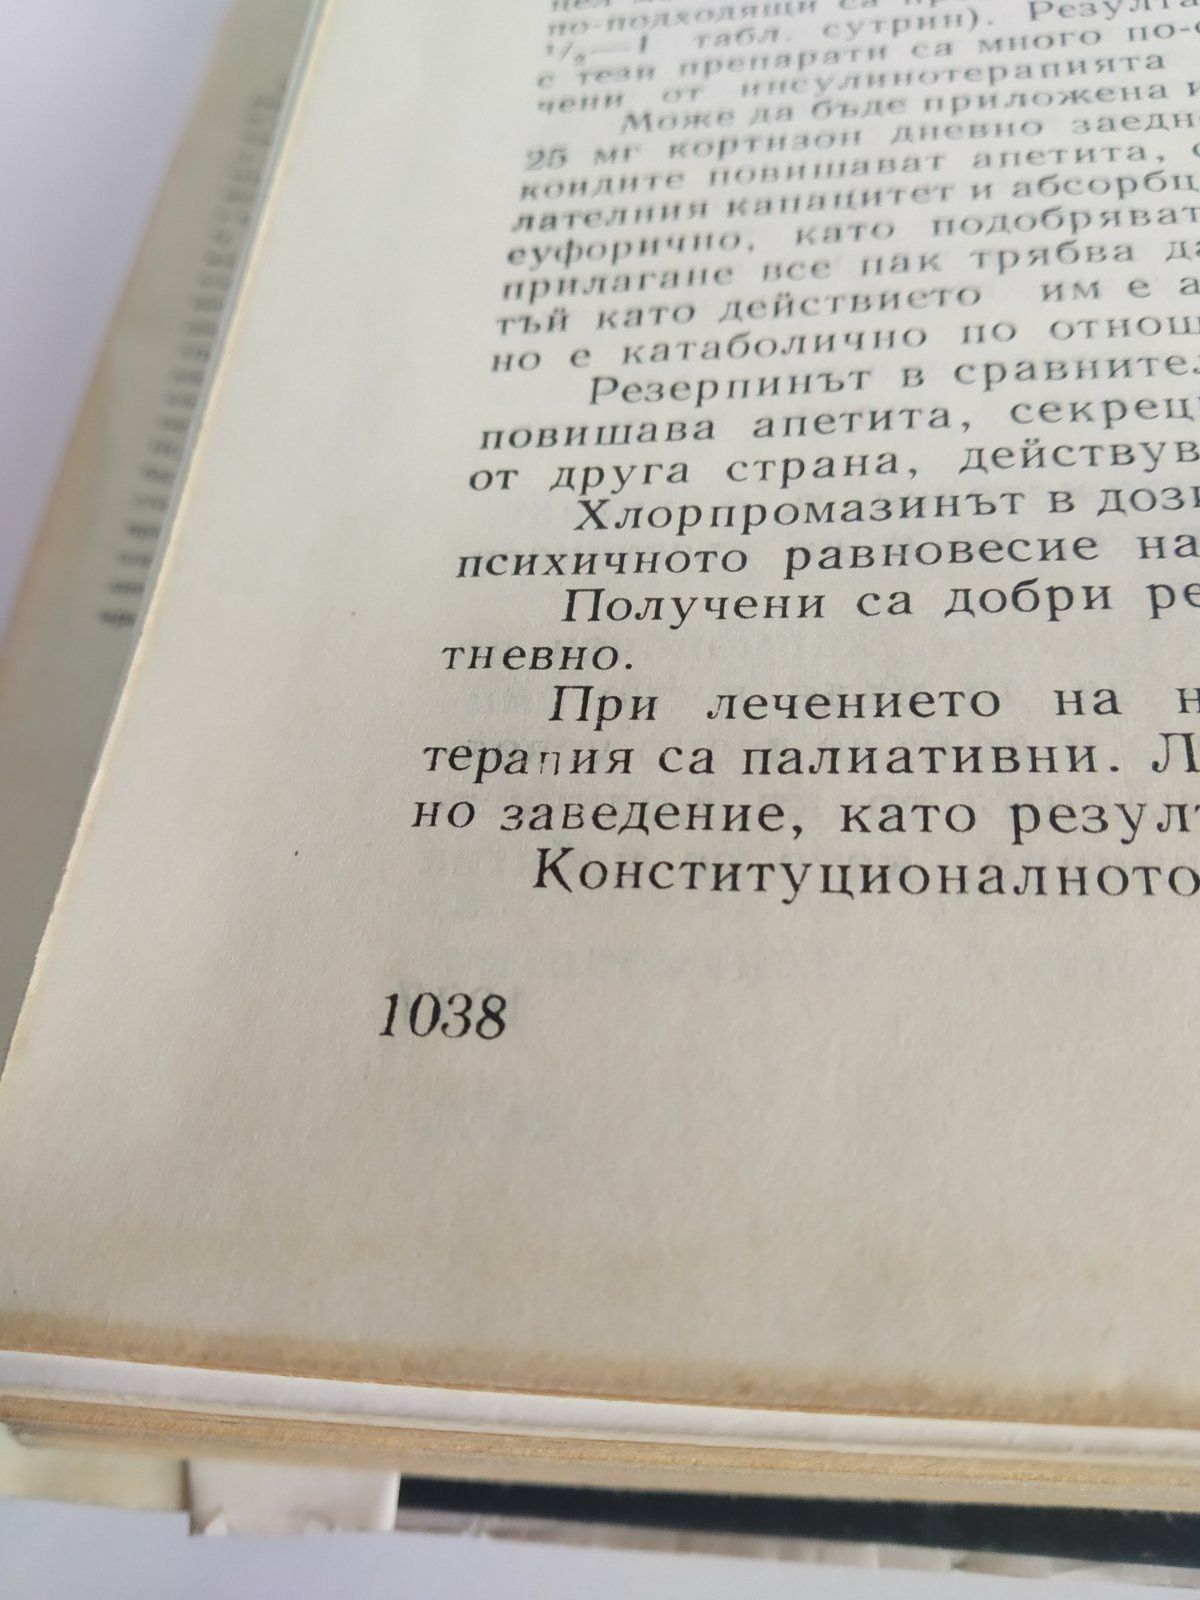 Стара медицинска литература ""Ендокринология" от 1968г